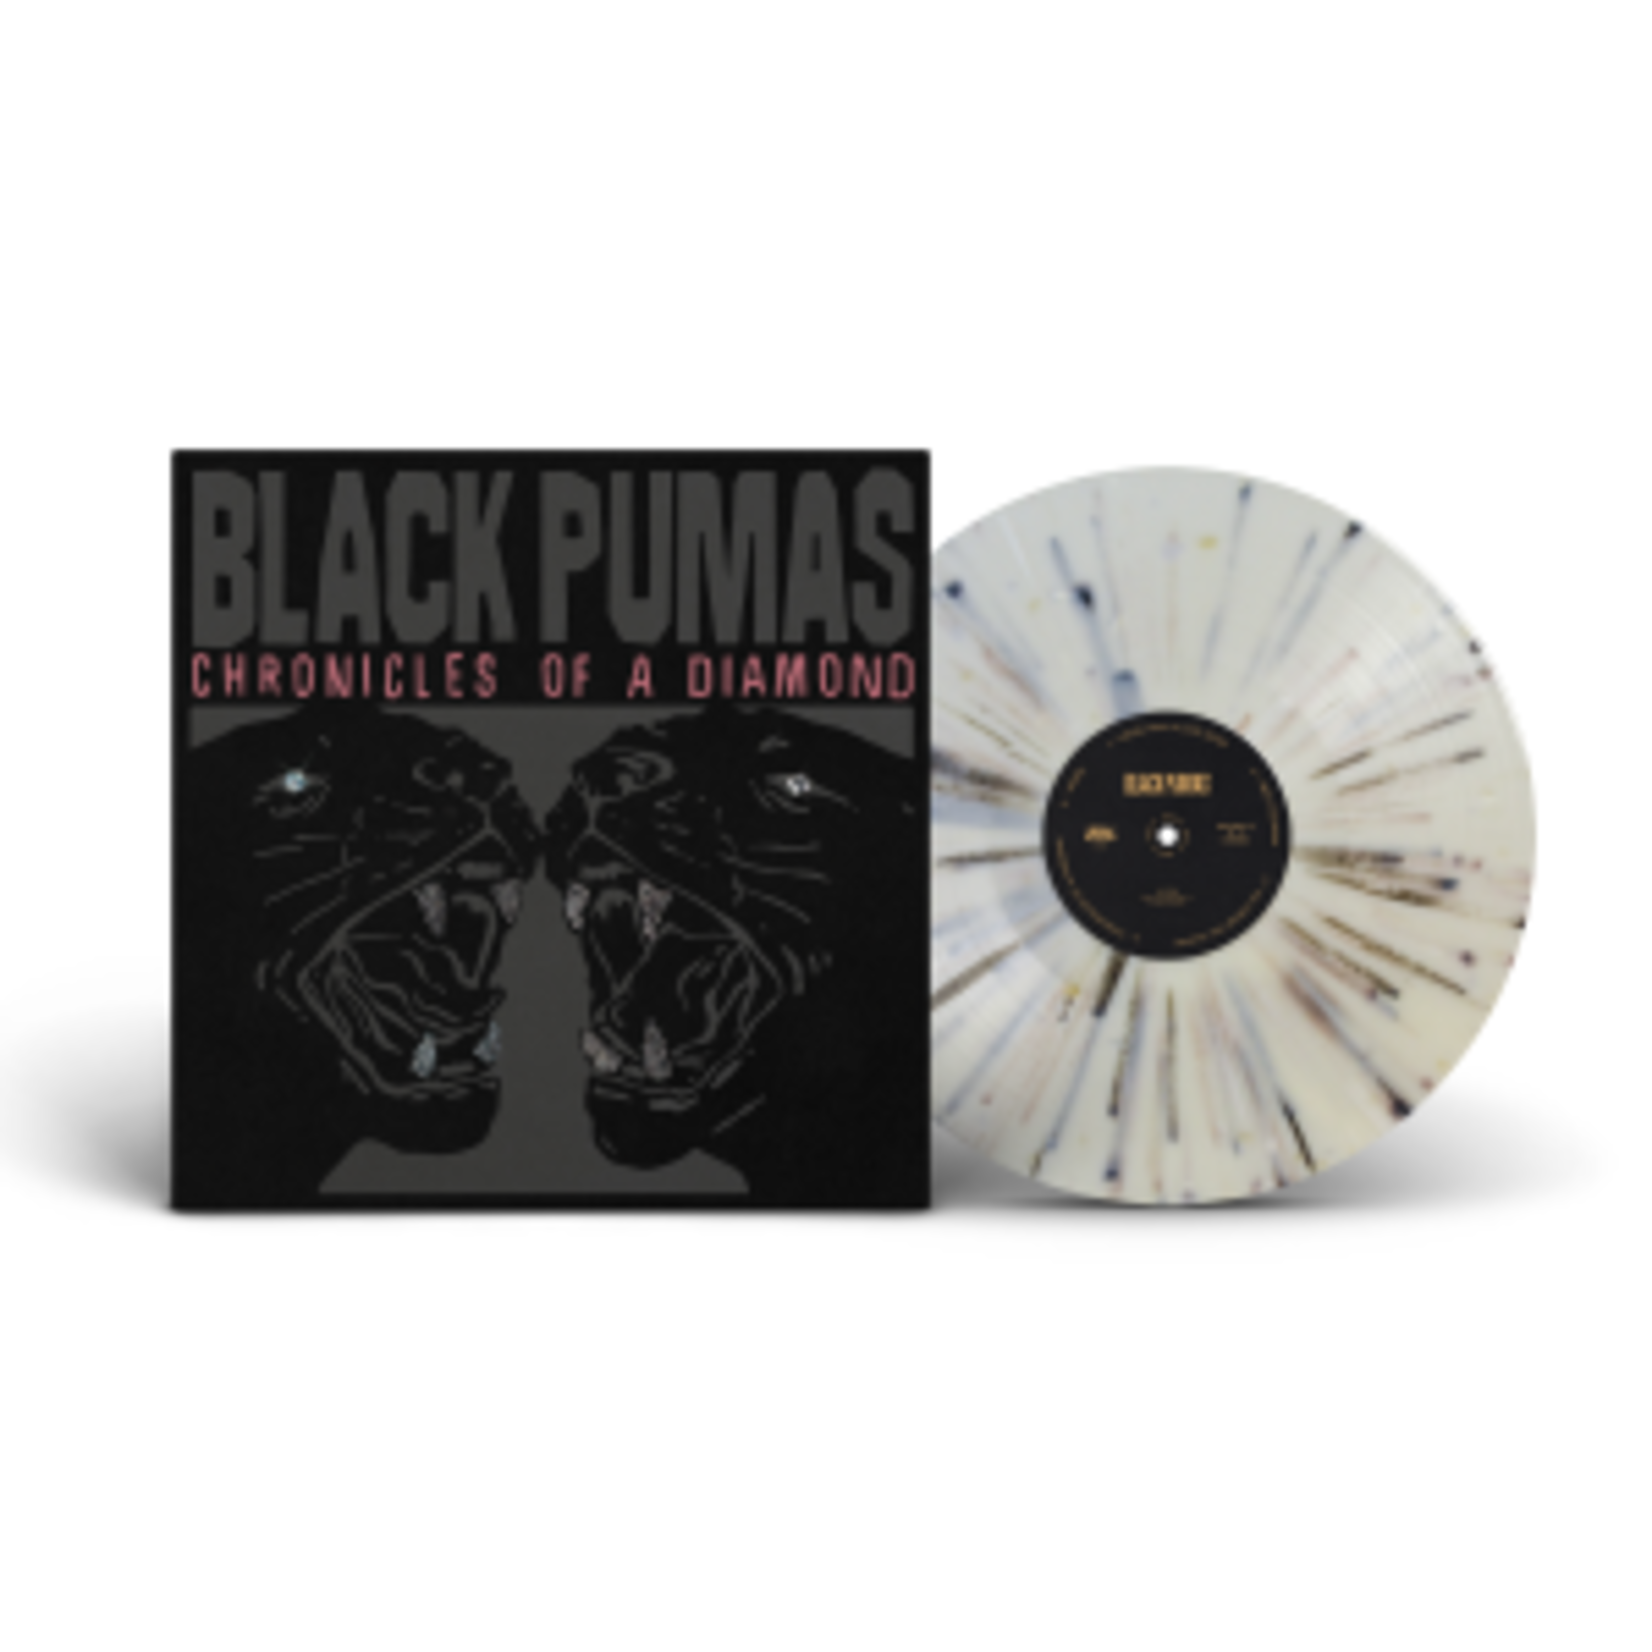 Black Pumas édition Deluxe Vinyle LP CD